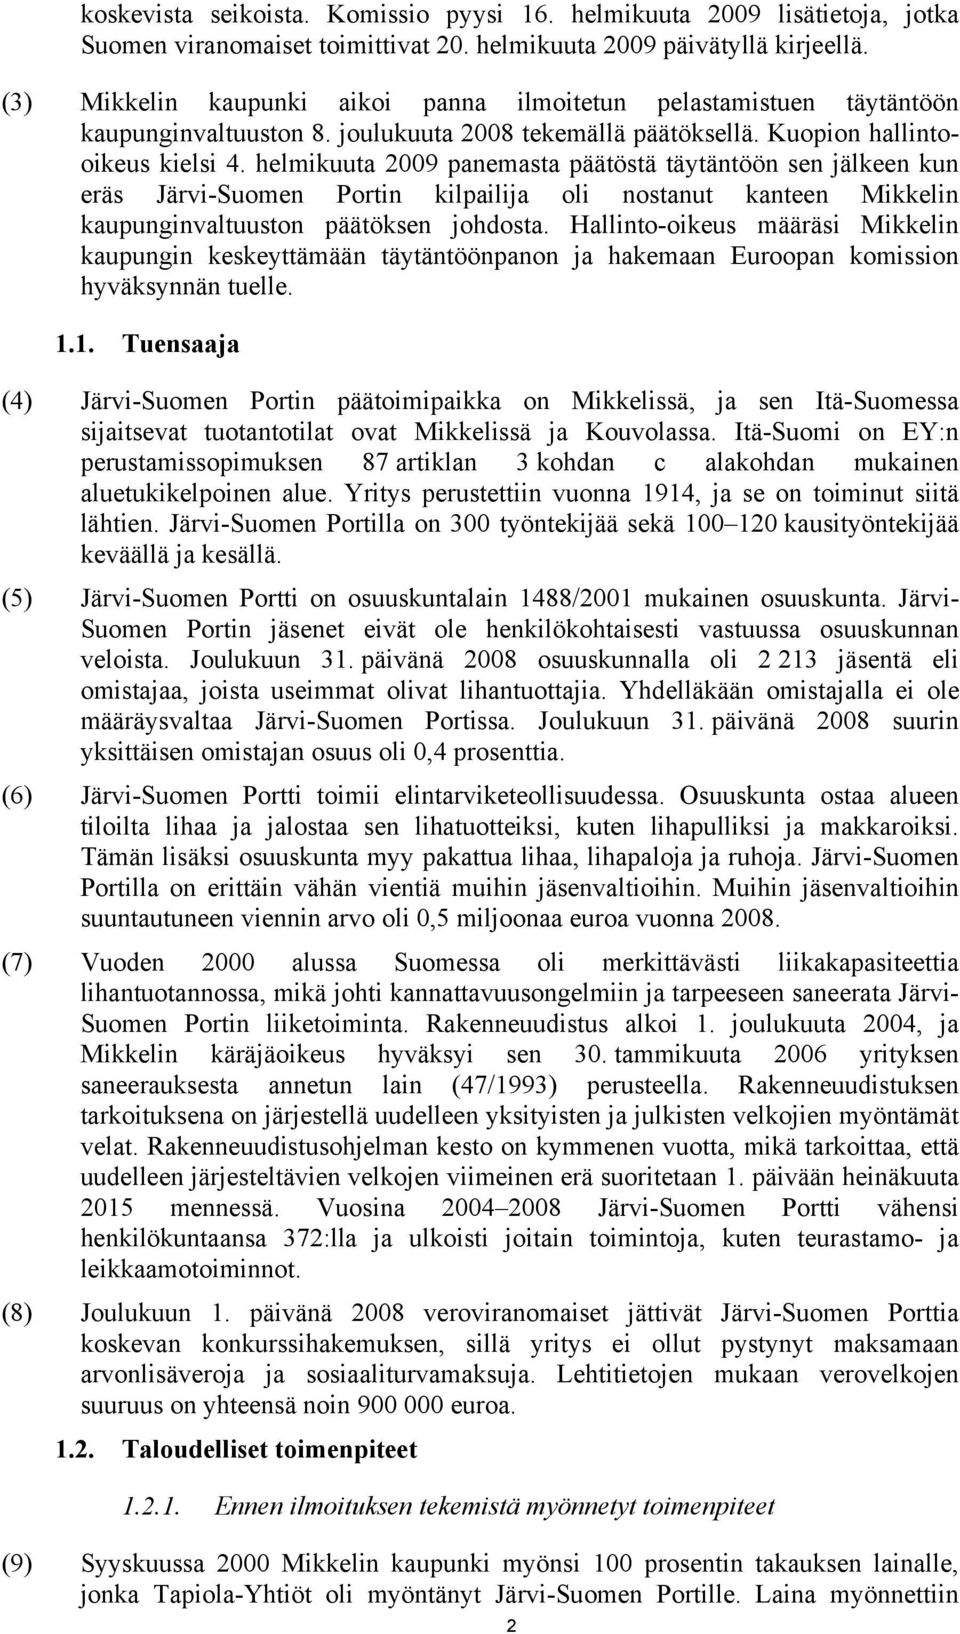 helmikuuta 2009 panemasta päätöstä täytäntöön sen jälkeen kun eräs Järvi-Suomen Portin kilpailija oli nostanut kanteen Mikkelin kaupunginvaltuuston päätöksen johdosta.